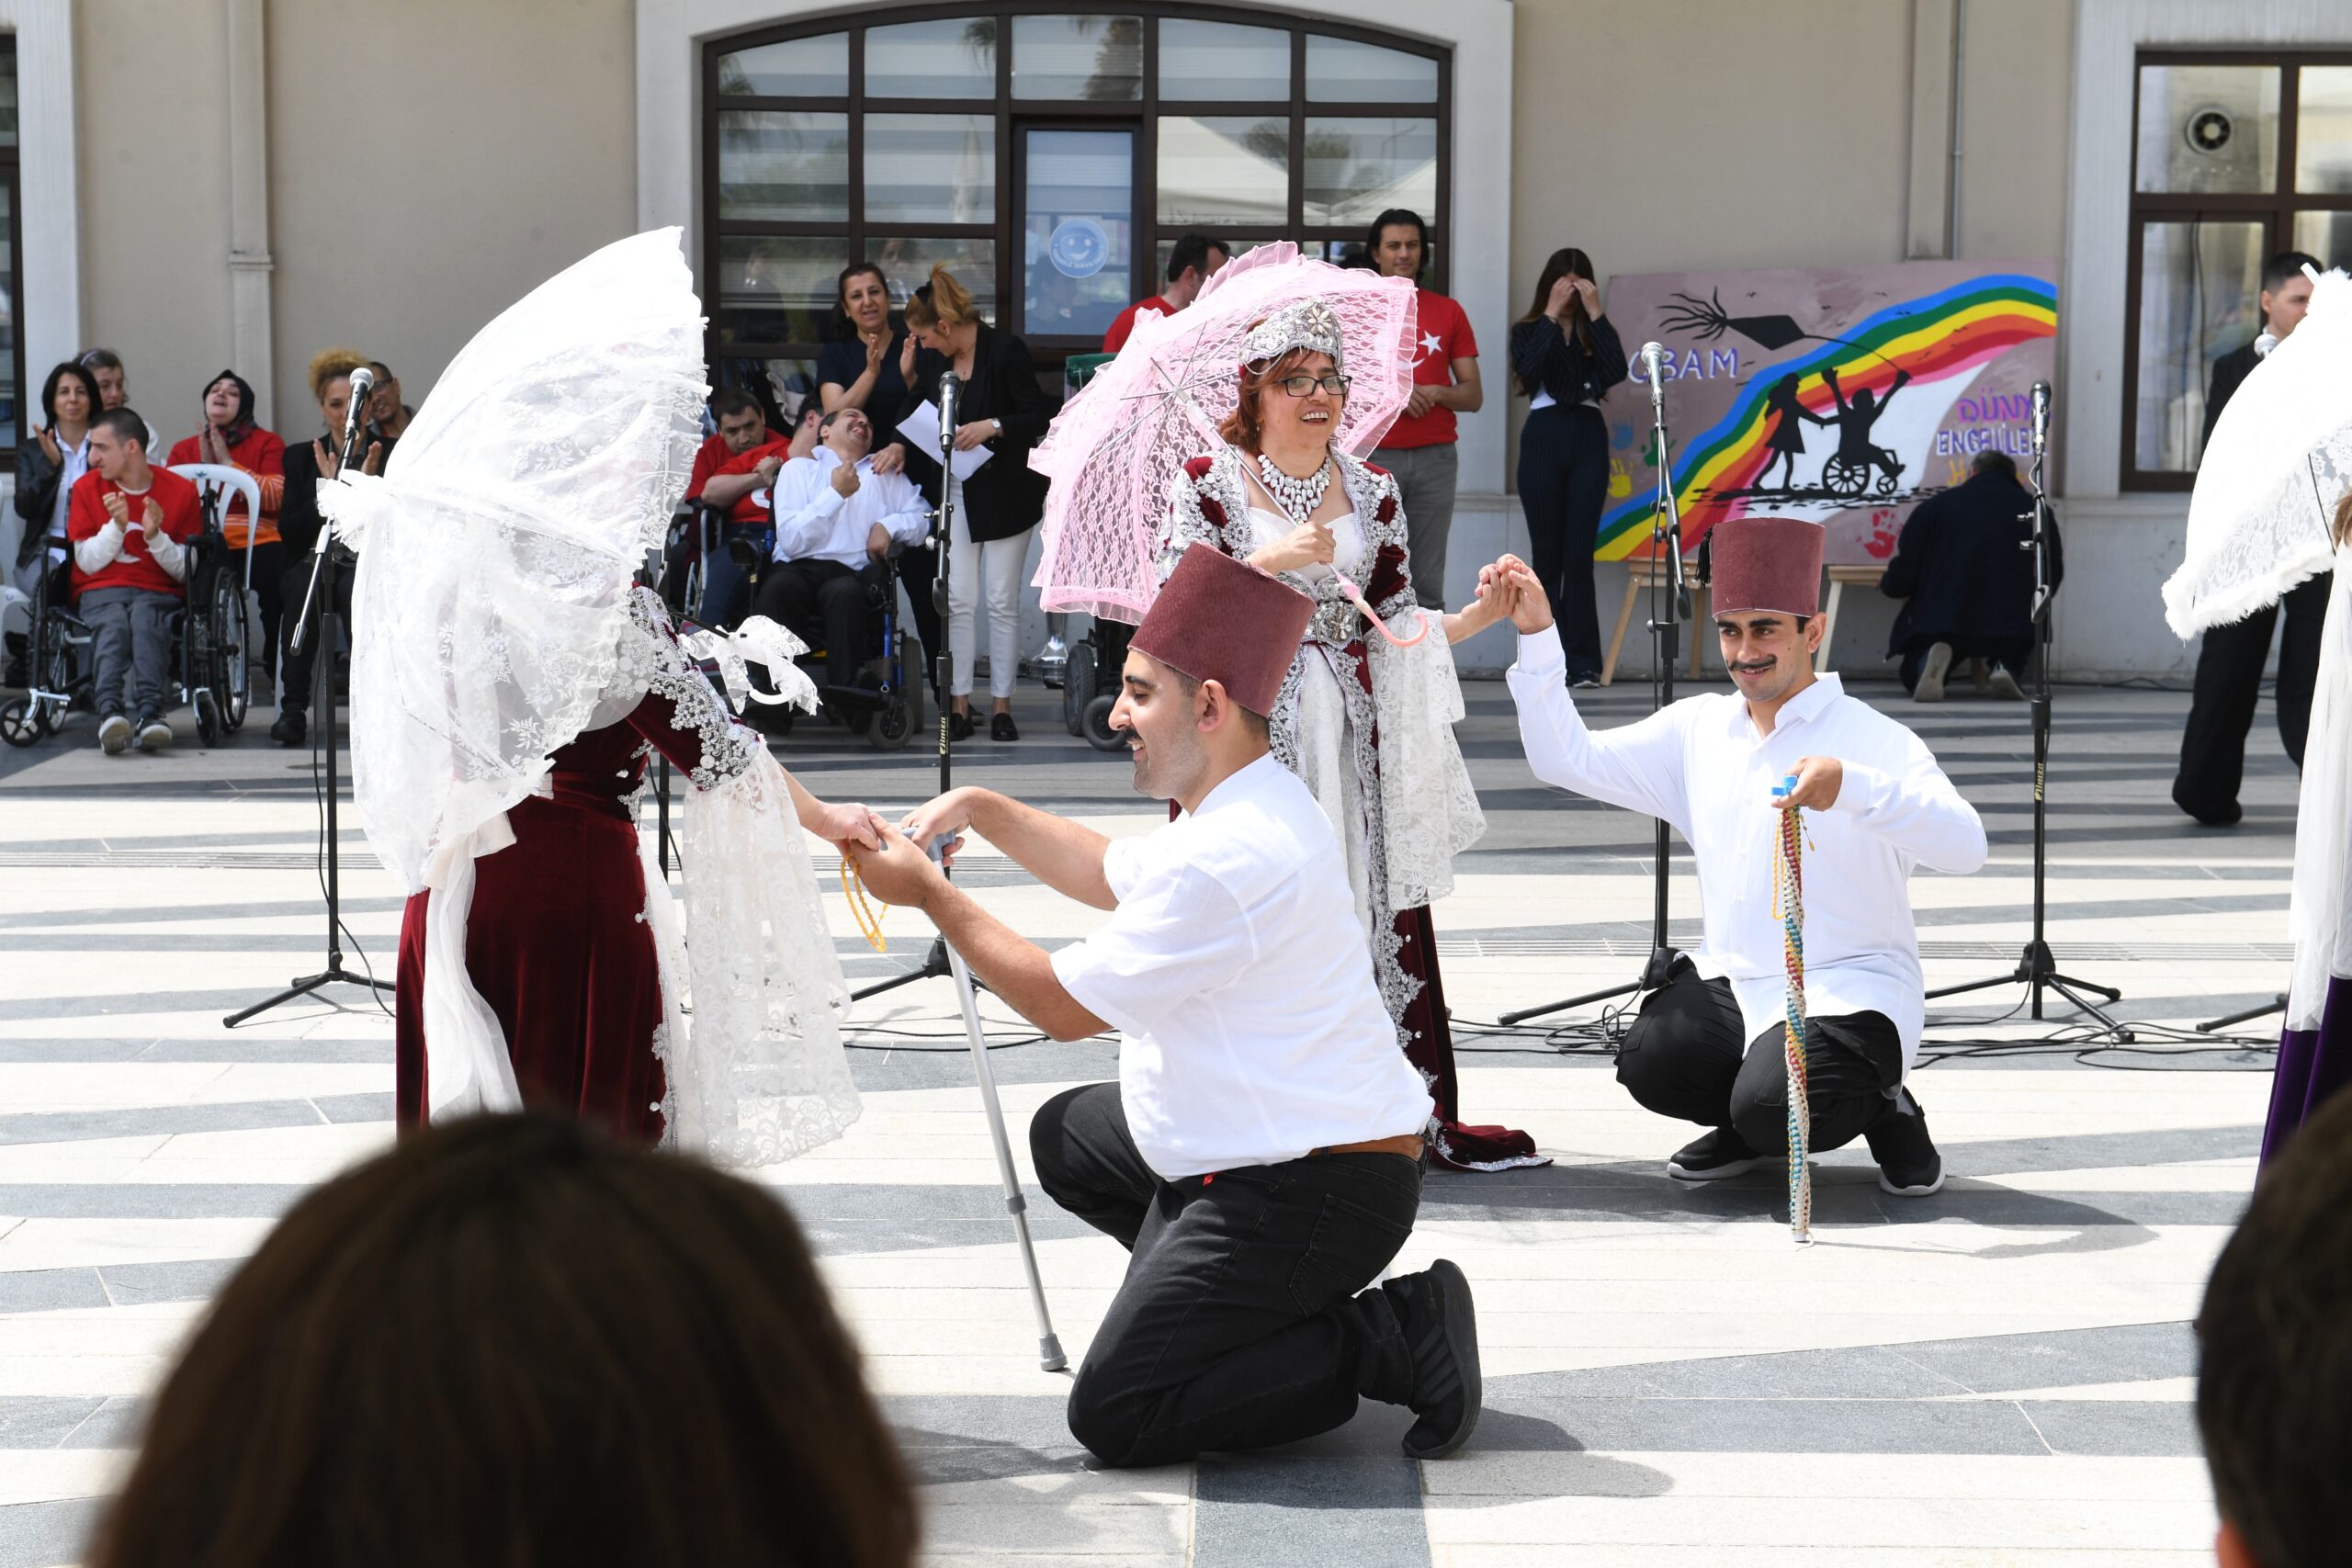 Osmangazi Belediyesi, Dünya Engelliler Haftası’nı düzenlediği etkinlikle kutladı.